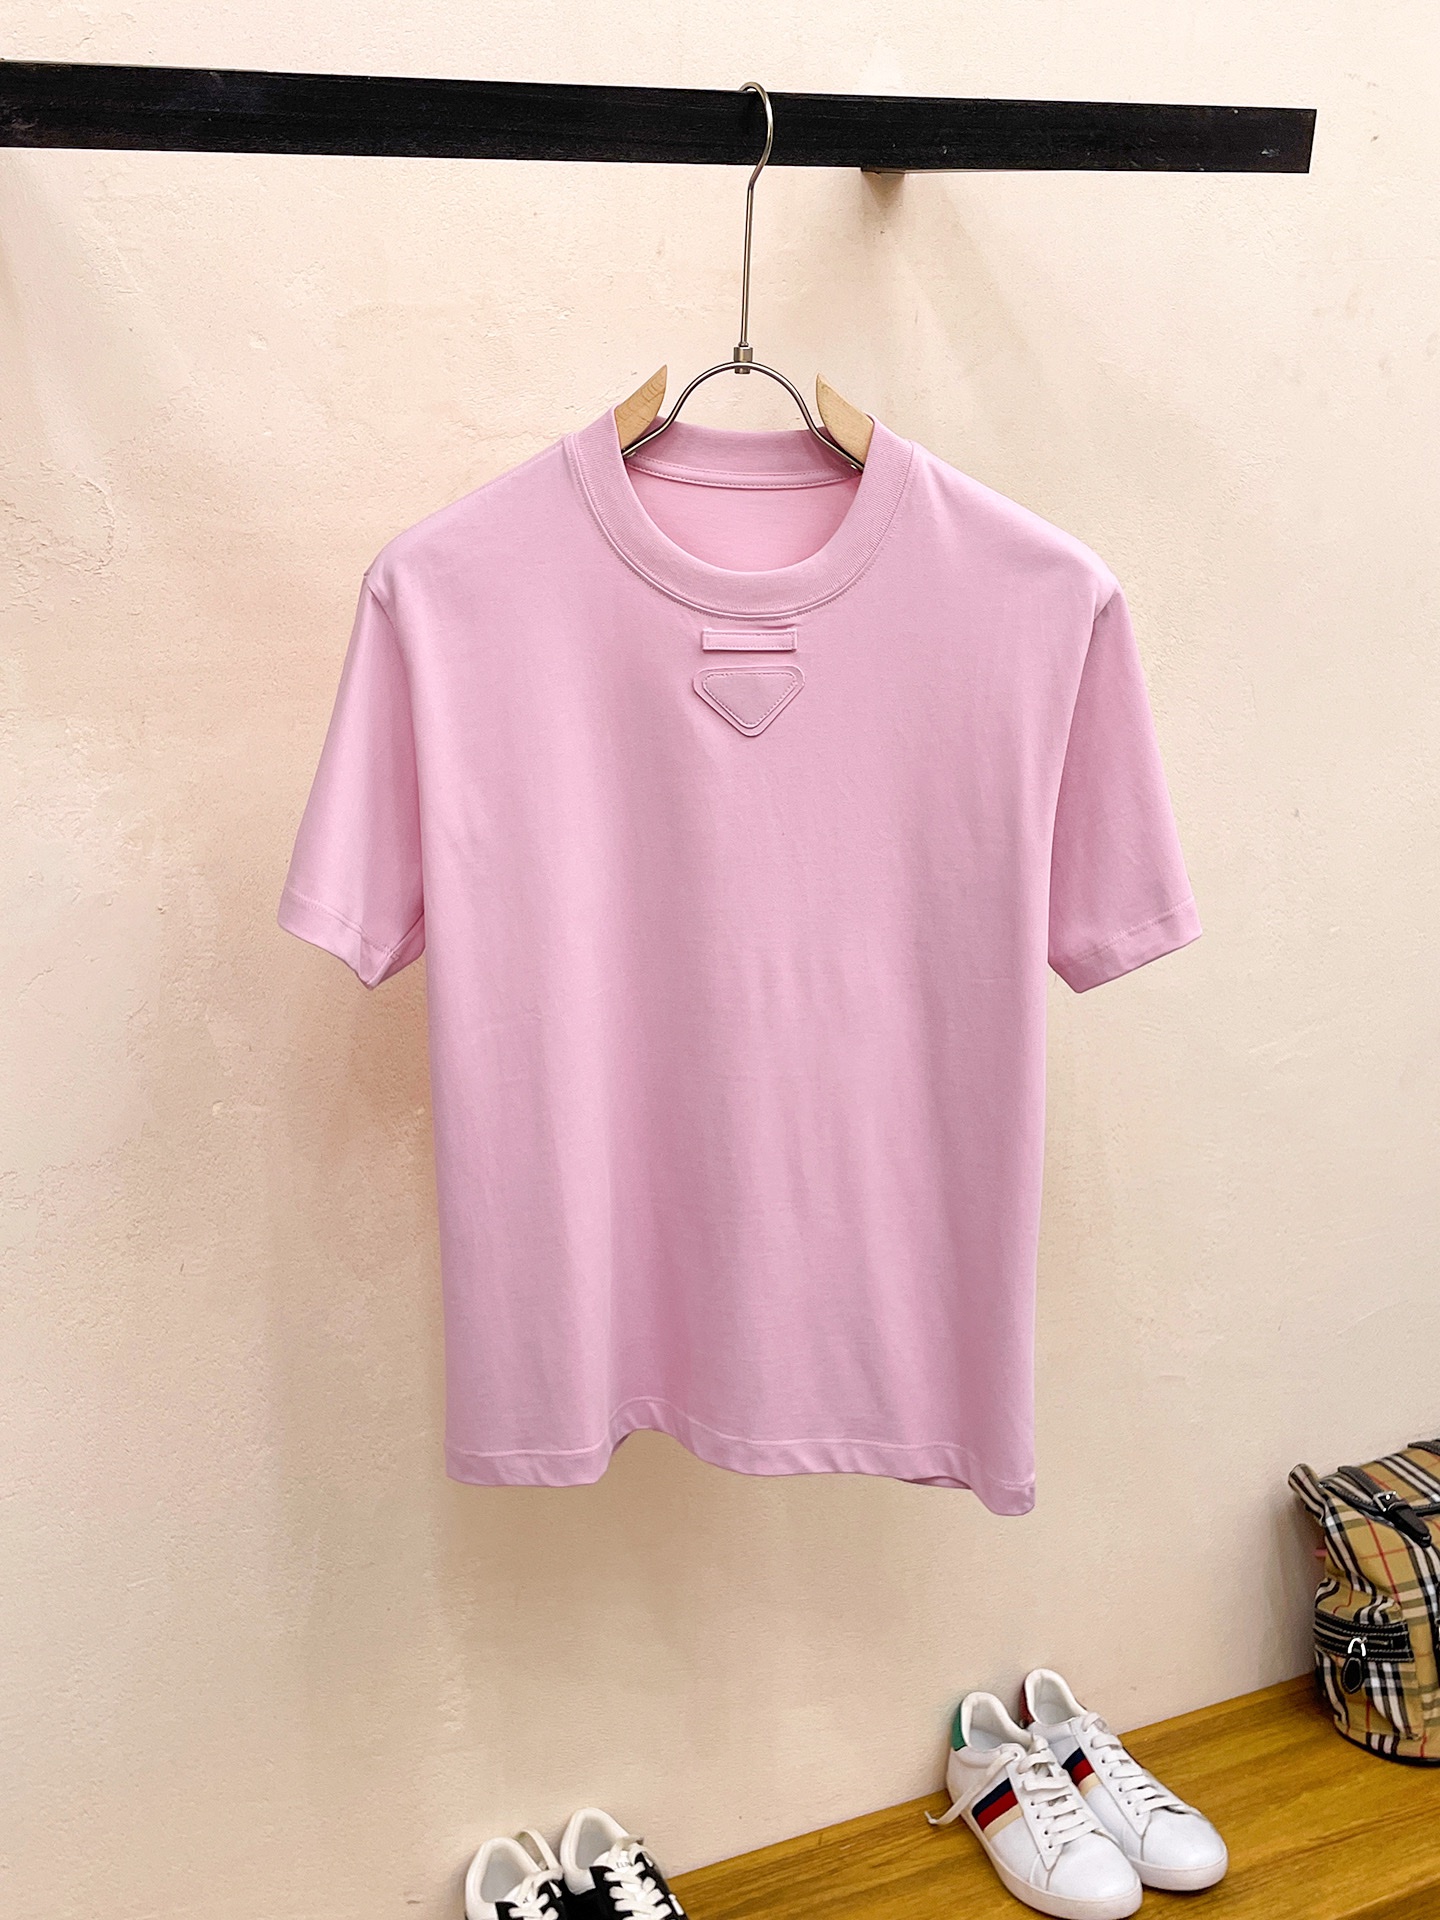 prada の t シャツ激安通販 短袖 ゆったり 純綿 トップス プリント 柔らかい シンプル ピンク_1